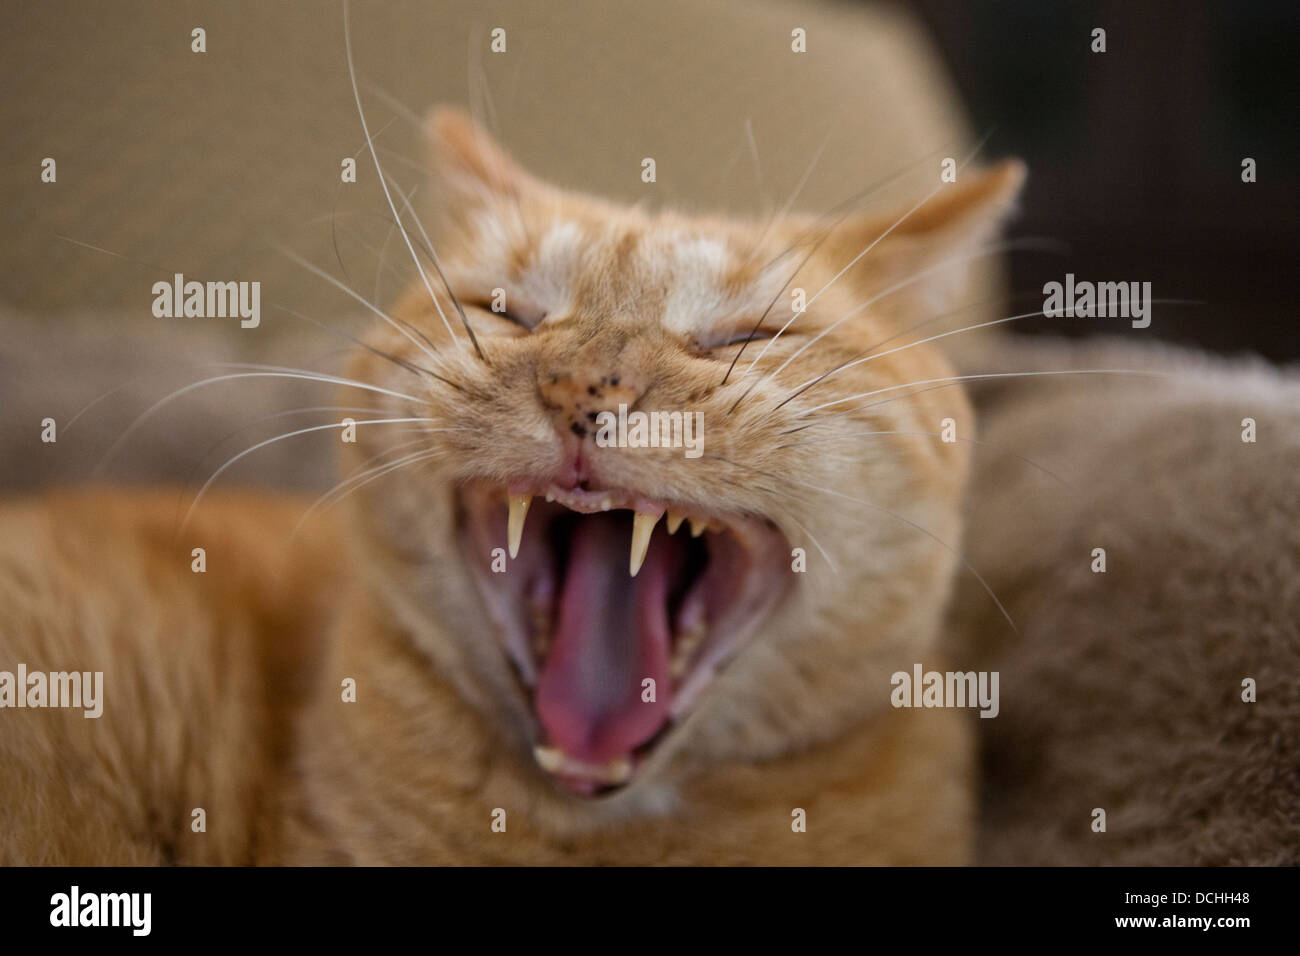 Retrato de un interno de Jengibre Naranja pelo corto Mackrel gato atigrado (Felis gatos) bostezos y mostrando los dientes. Foto de stock